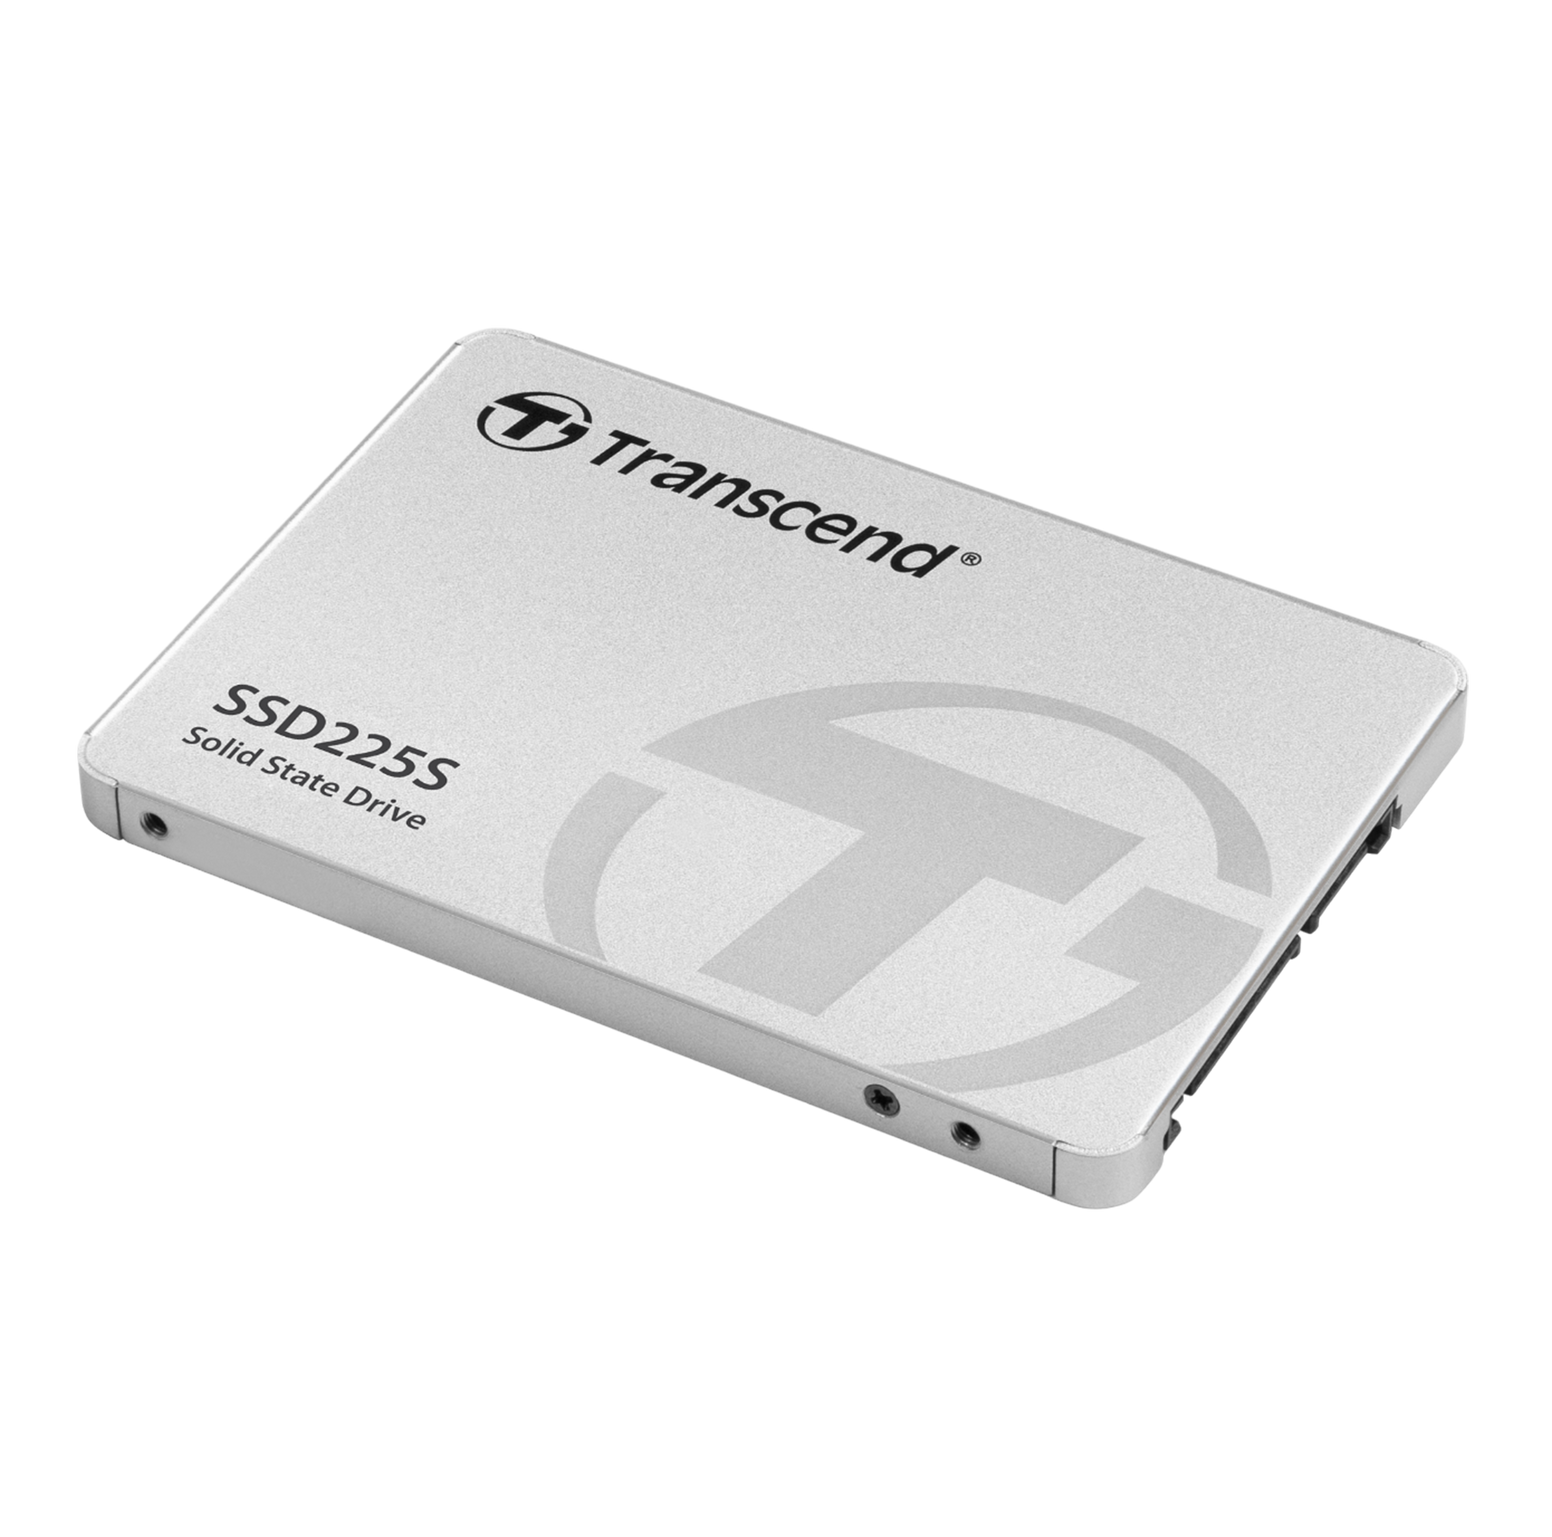 Transcend 2TB 2.5” SATA III SSD225S